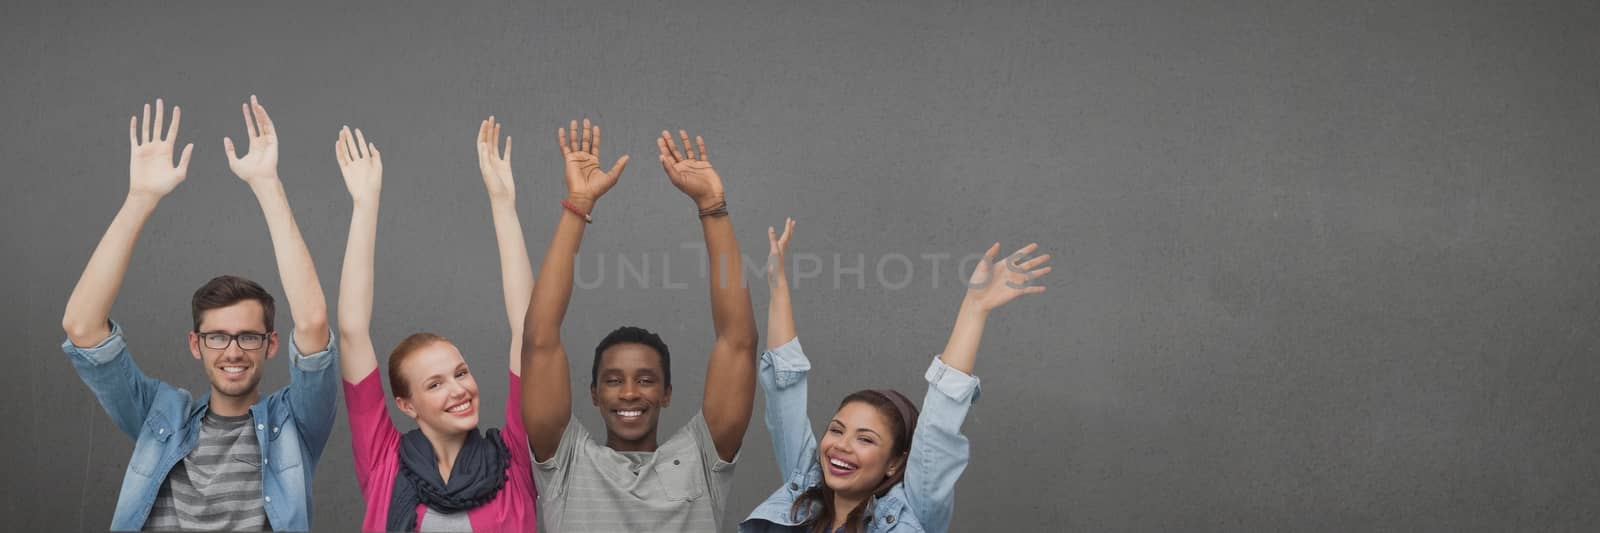 Digital composite of Happy people raising hands against wide blank grey